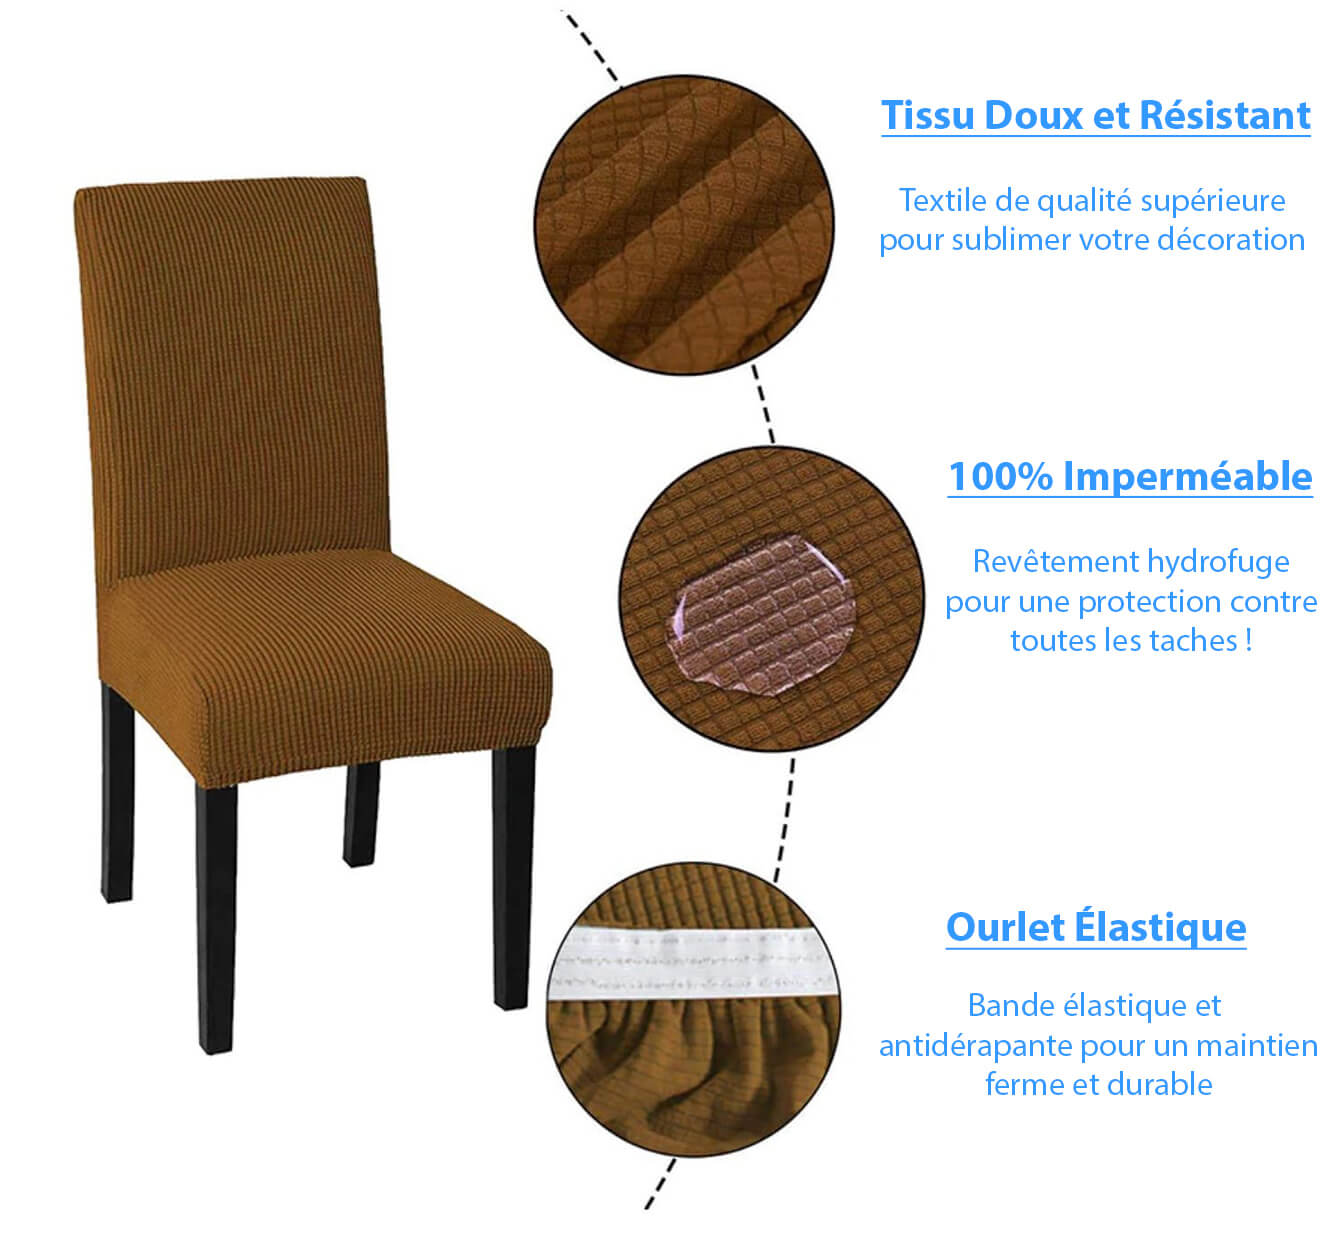 Caracteristiques de notre Housse de chaise impermeable extensible et resistante